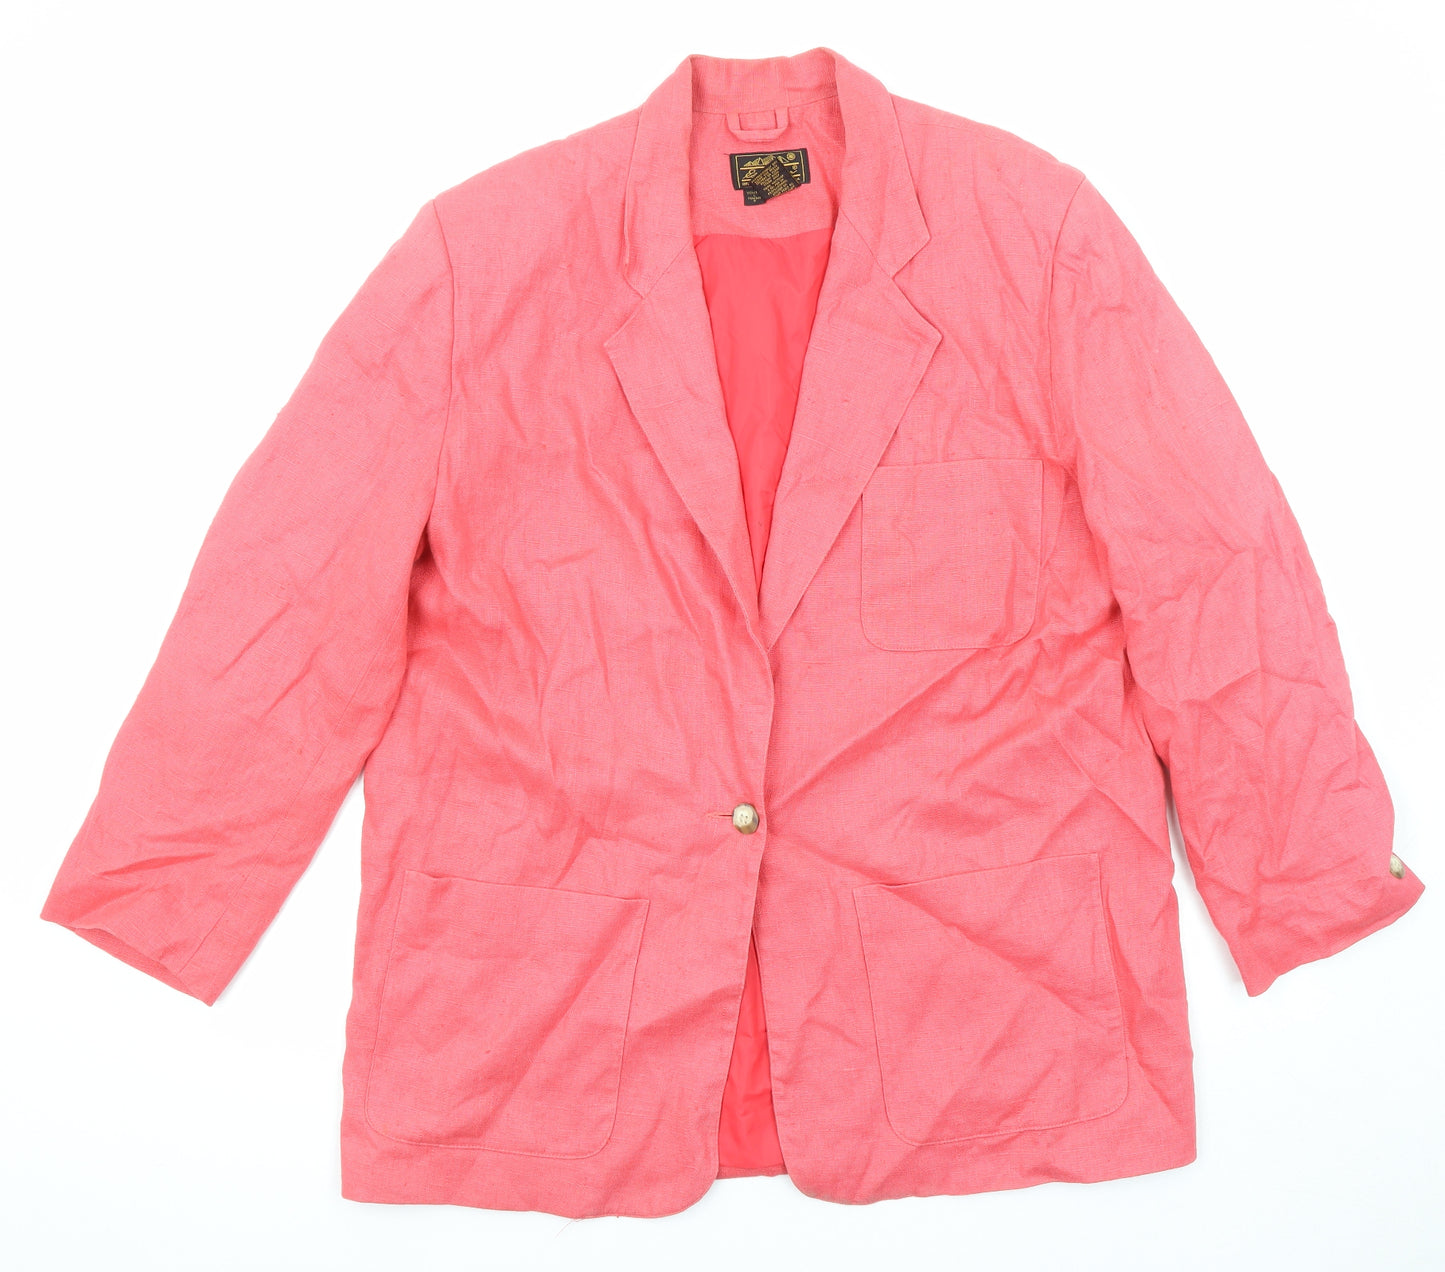 Eddie Bauer Womens Pink Jacket Blazer Size L Button